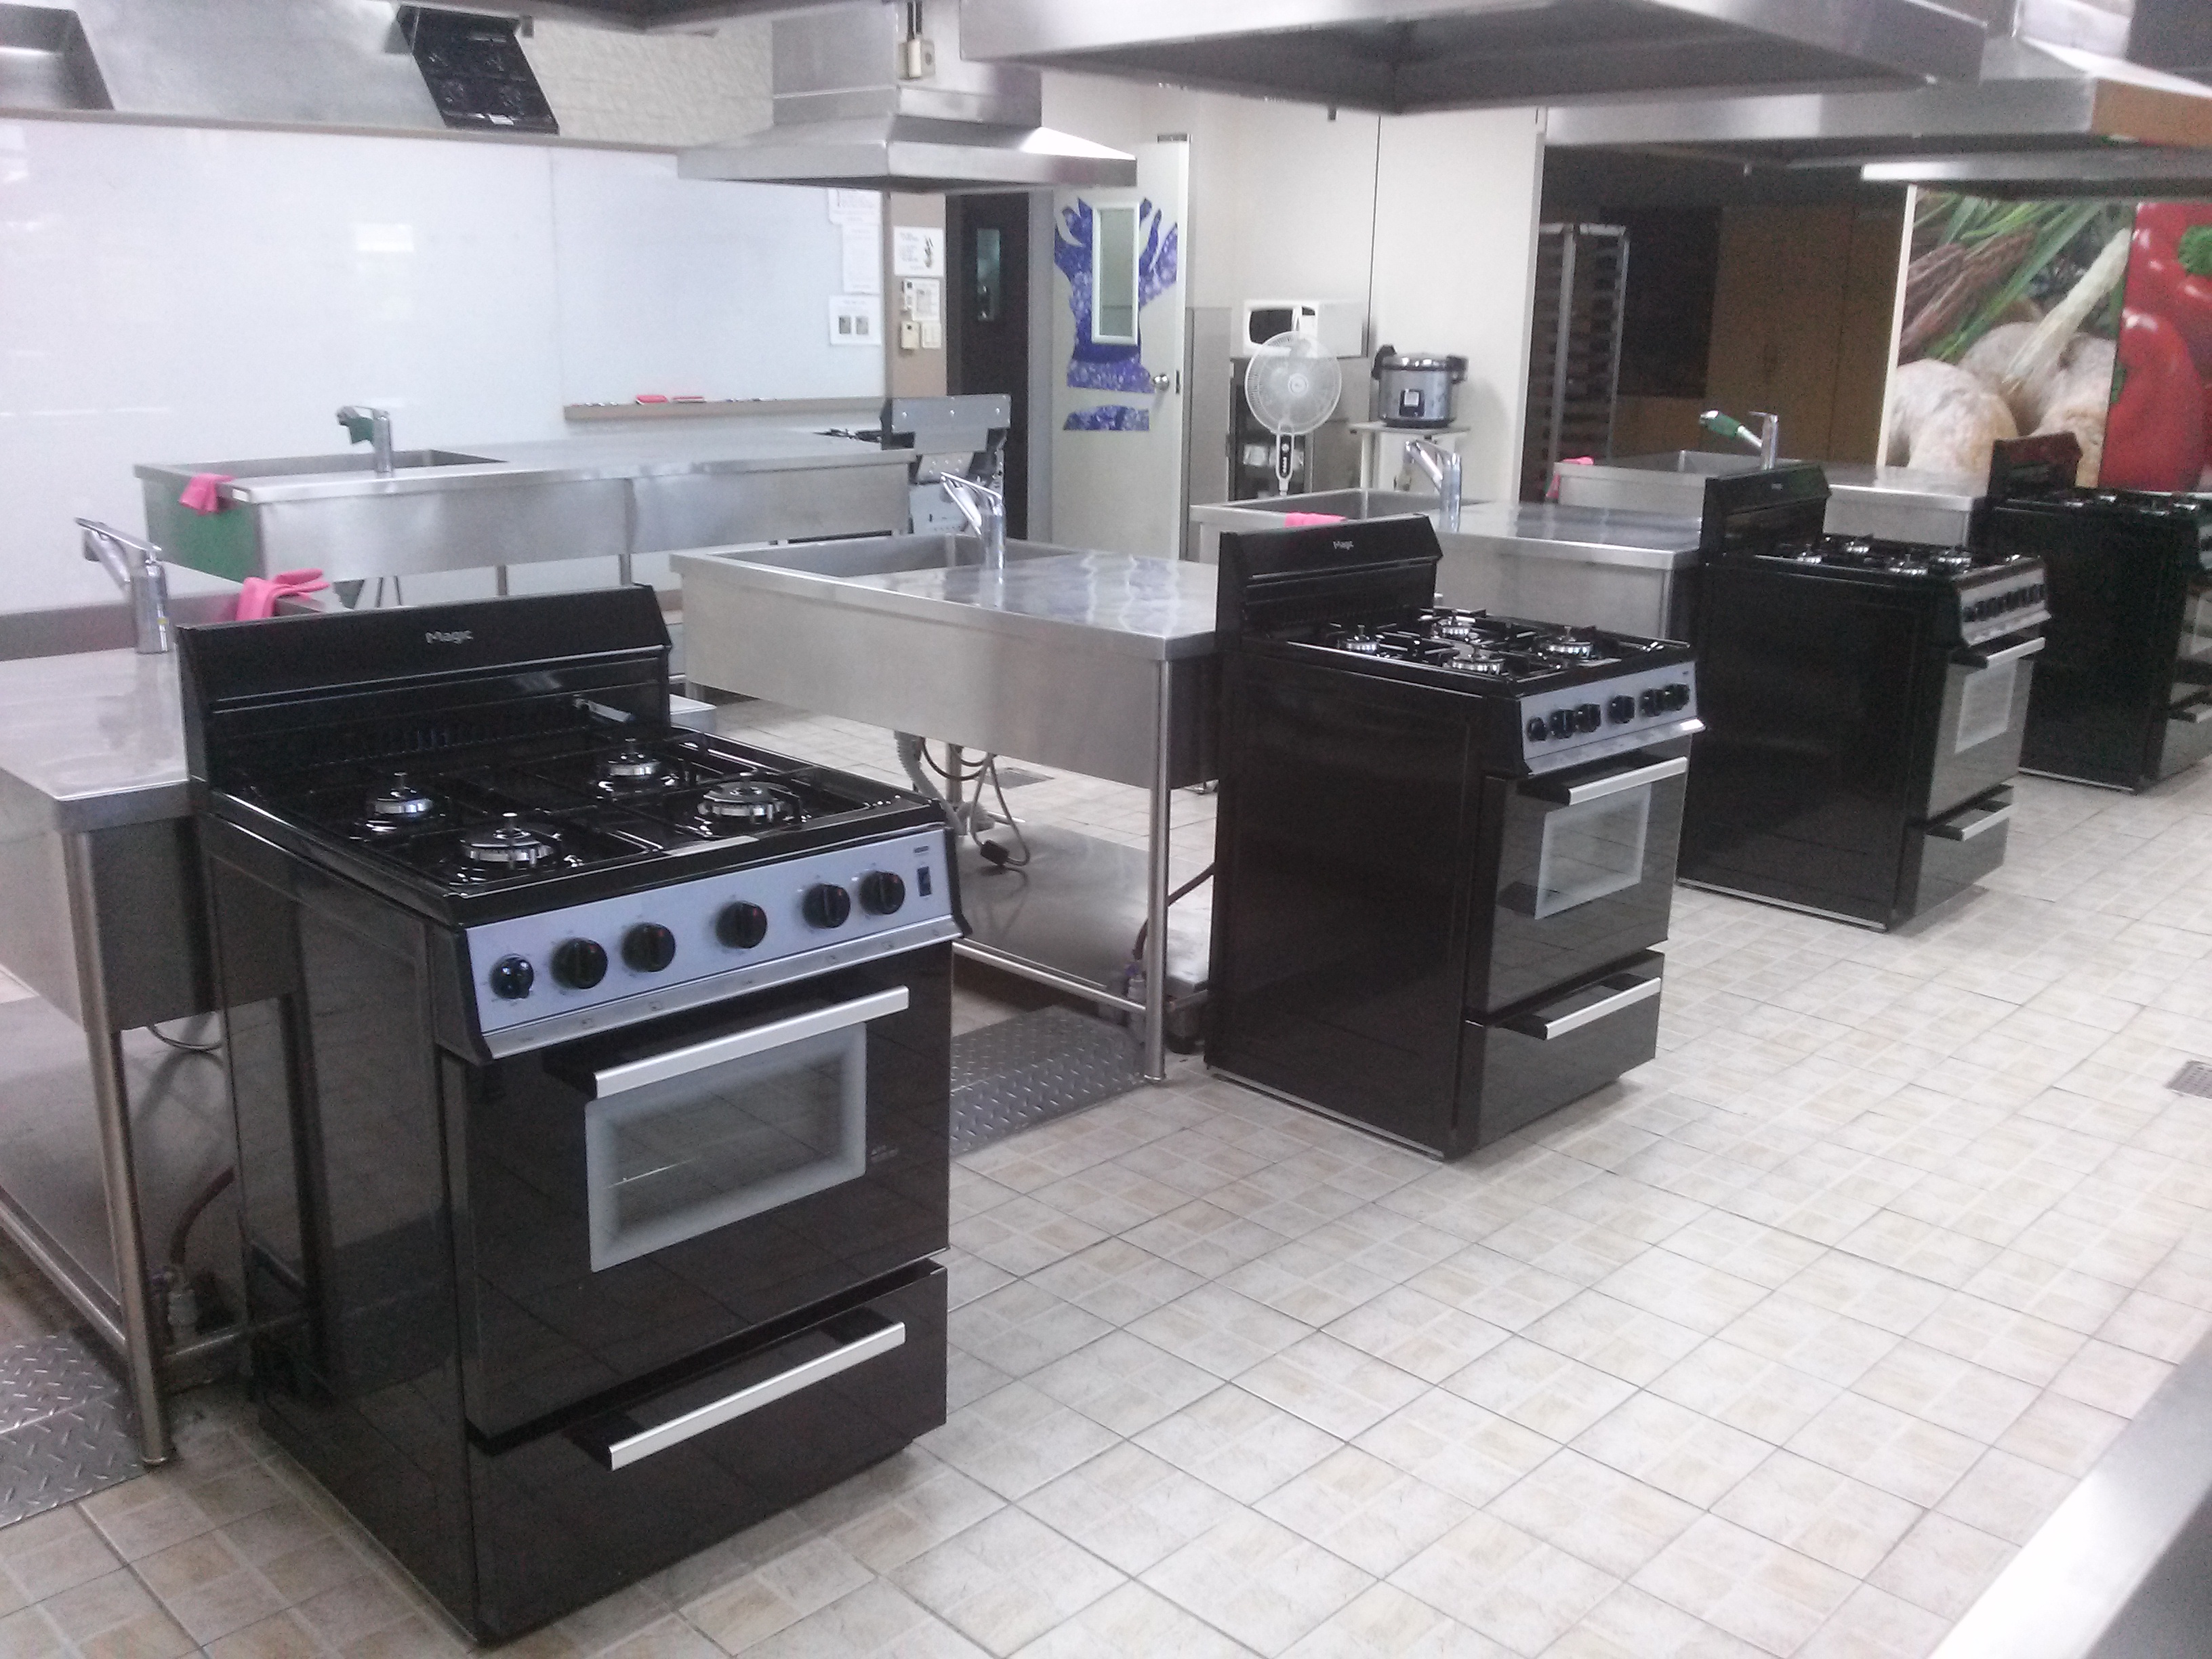 요리교실 새단장 : 안전하고 쾌적한 요리교실을 위한 가스오븐레인지 전면 교체!!_1